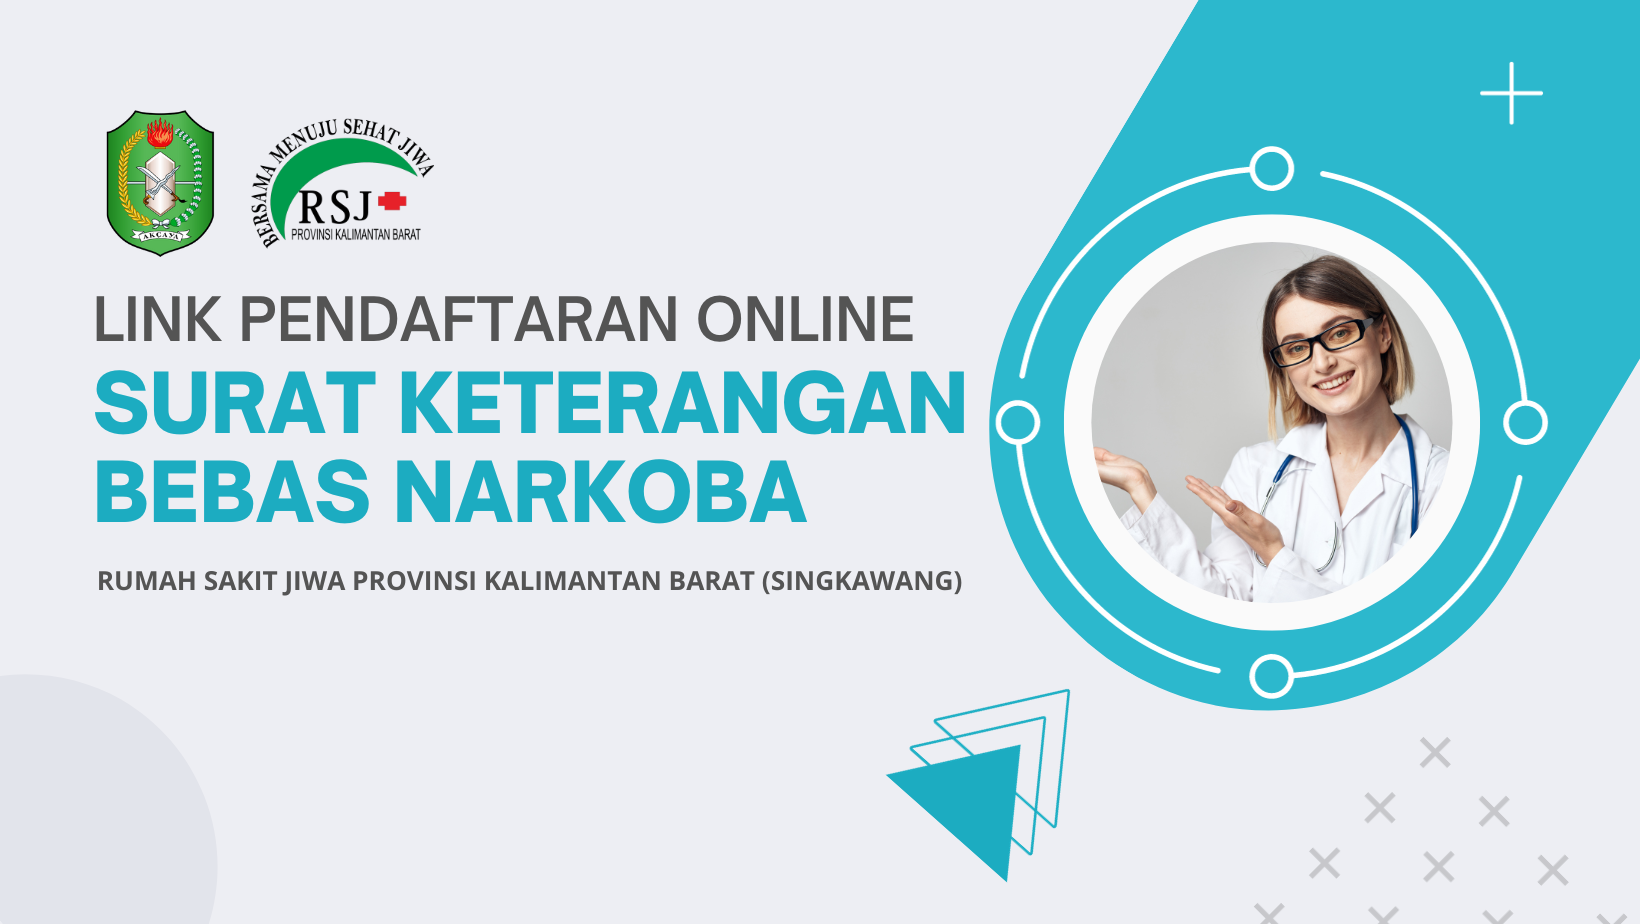 Link Pendaftaran Online Pembuatan SKBN (Surat Keterangan Bebas Narkoba) di RSJ Singkawang